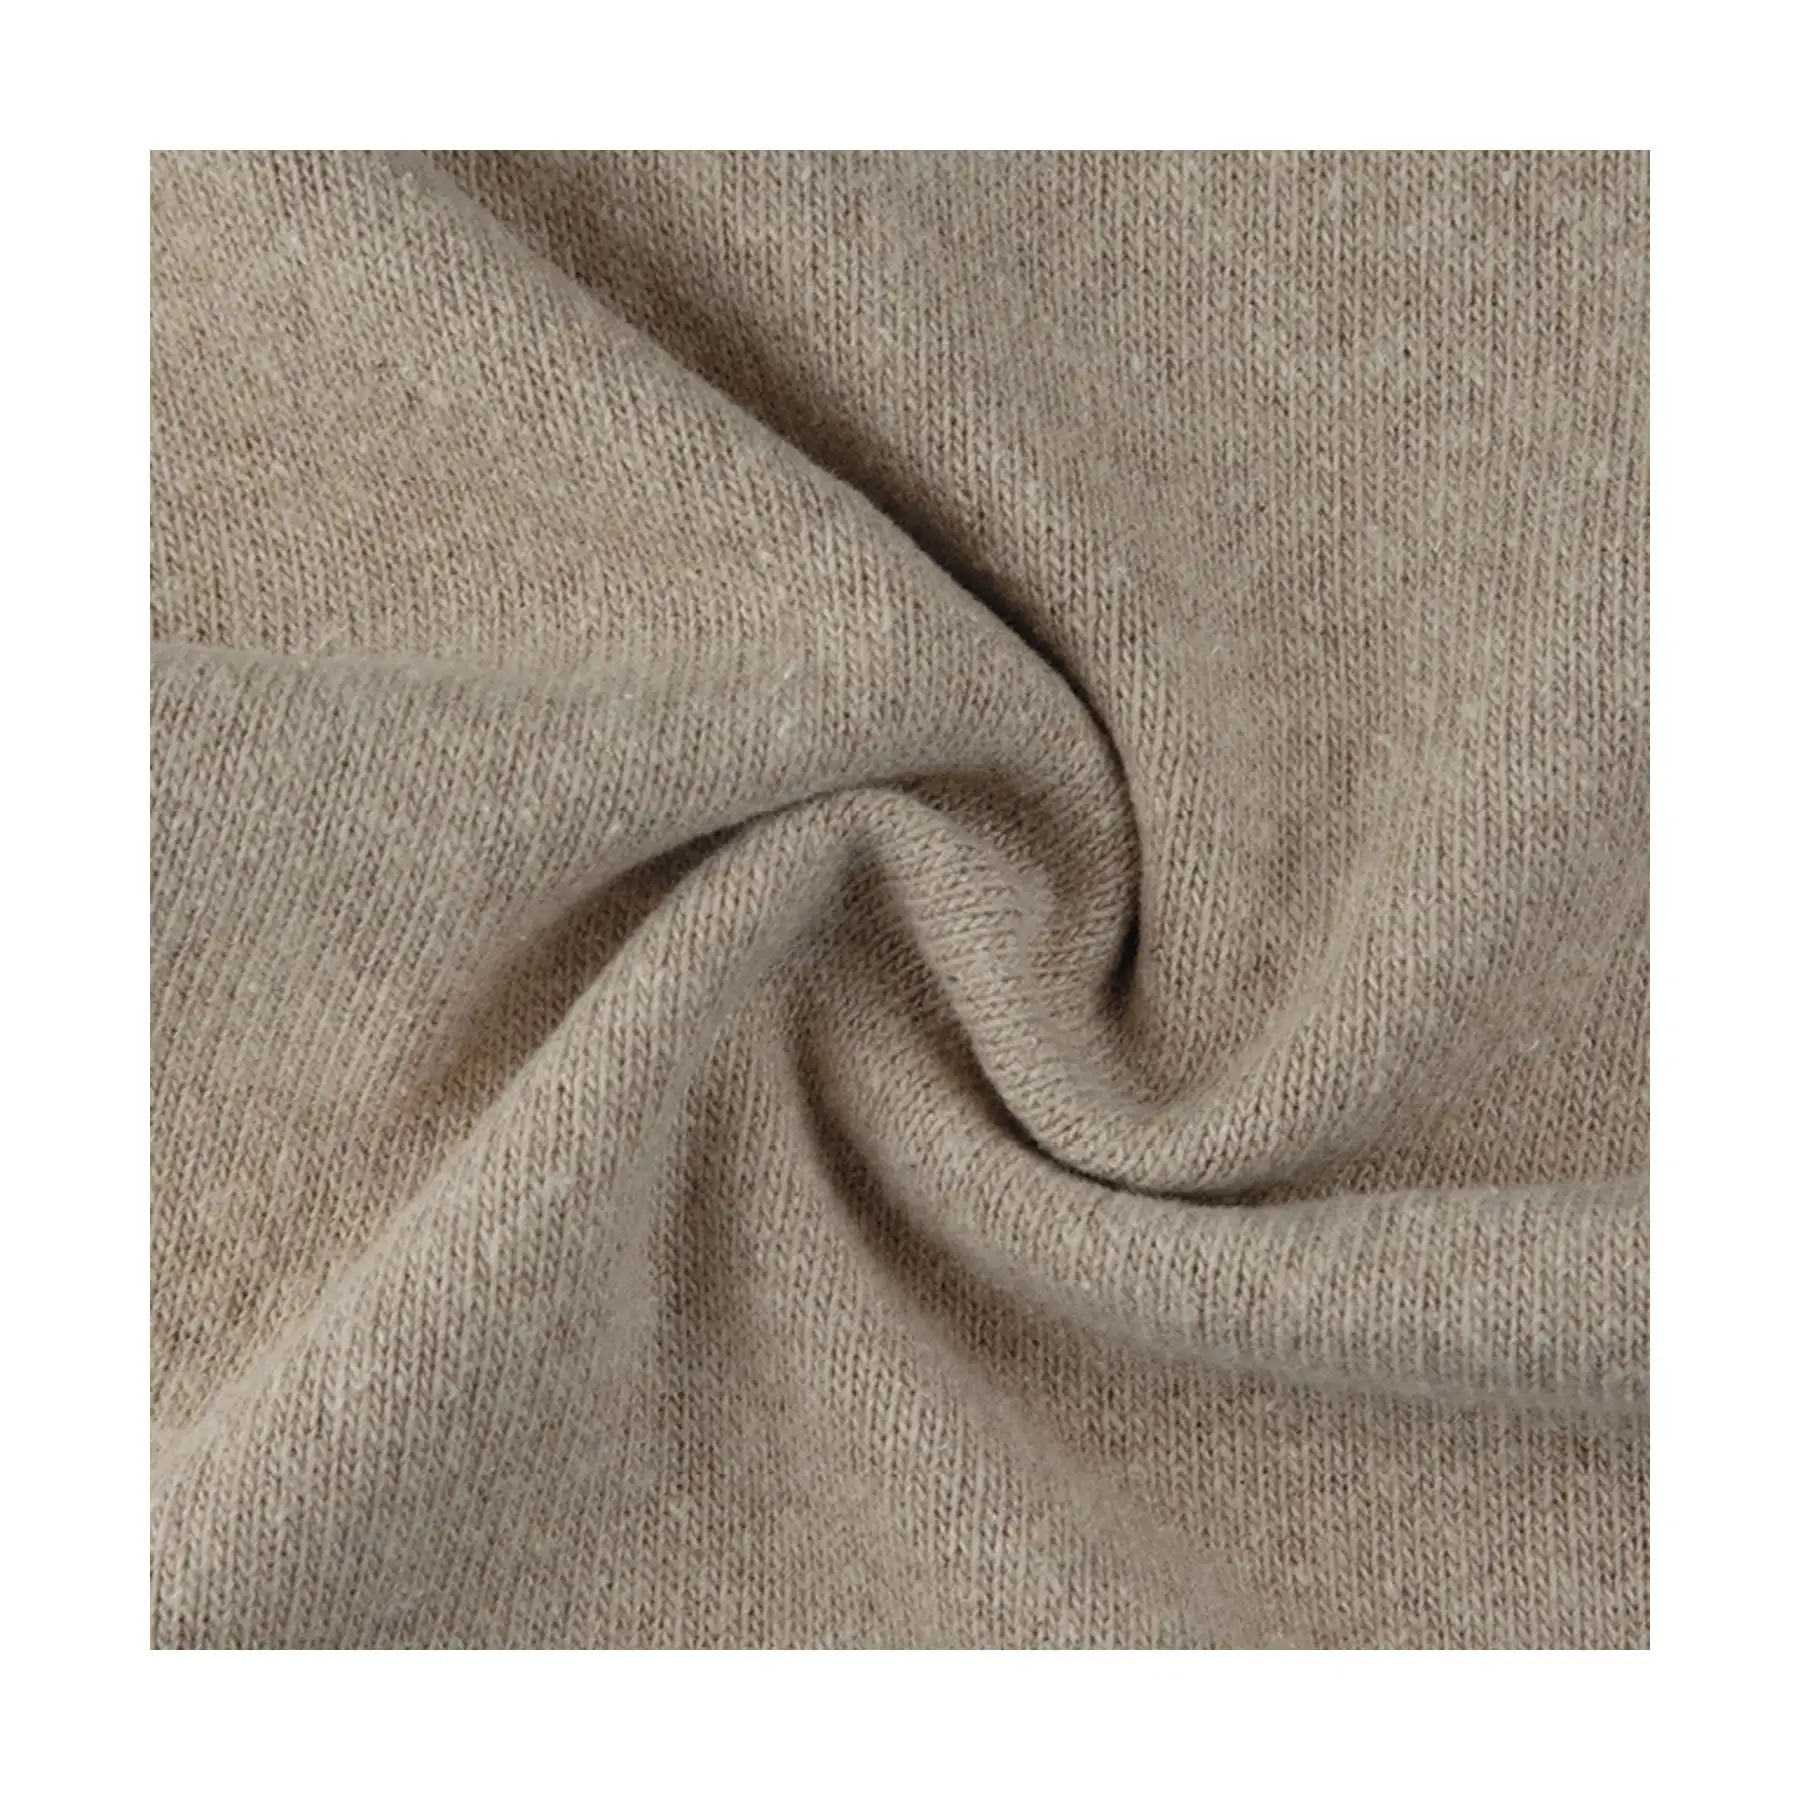 Tessuto Jersey elastico In cotone Premium-realizzato In Italia morbido e flessibile-perfetto per abbigliamento da casa e da gioco per bambini